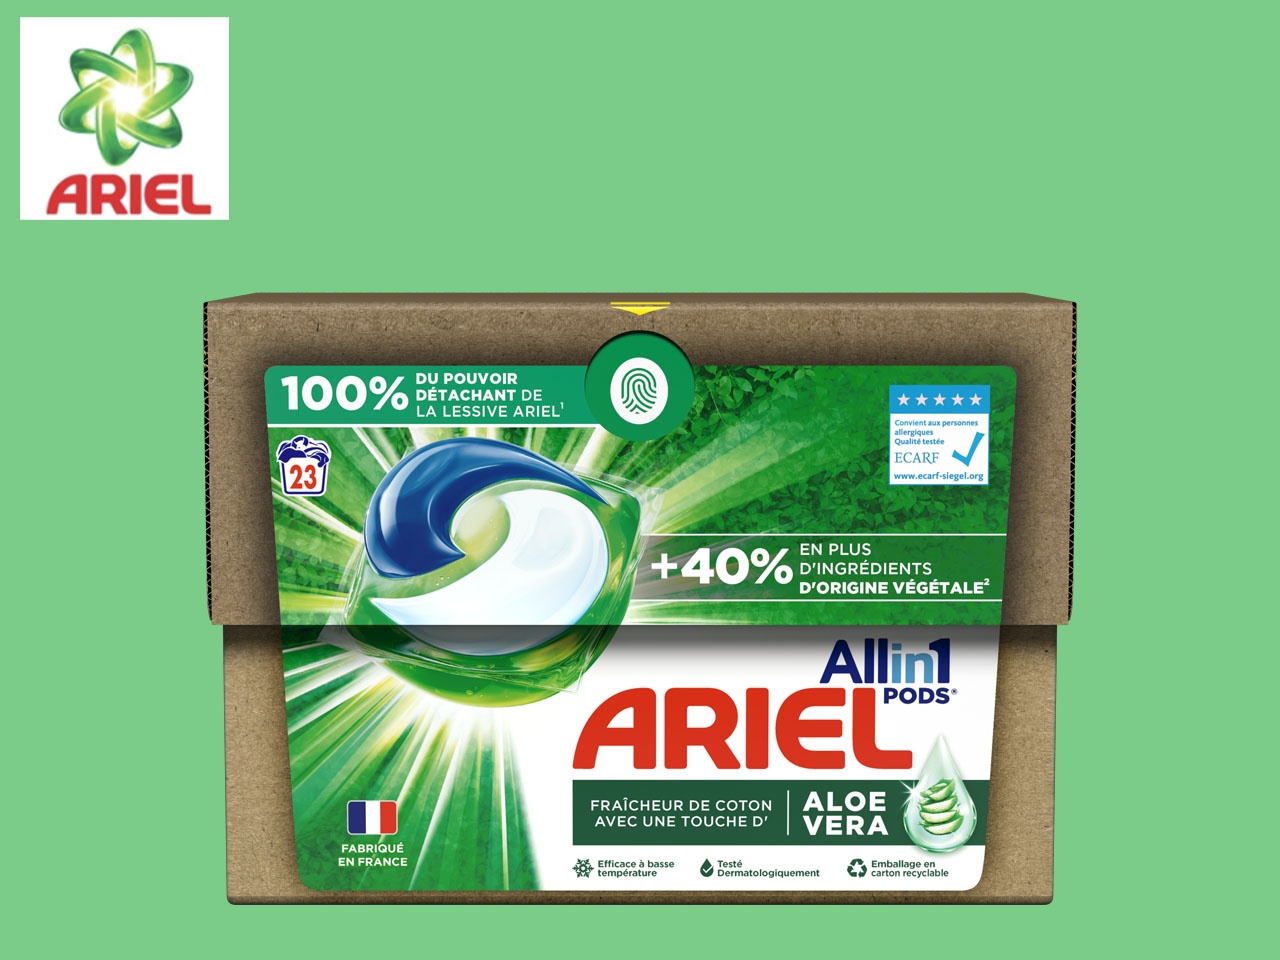 Ariel présente ECOCLIC® : son nouvel emballage en carton, innovant et réduisant l’empreinte plastique